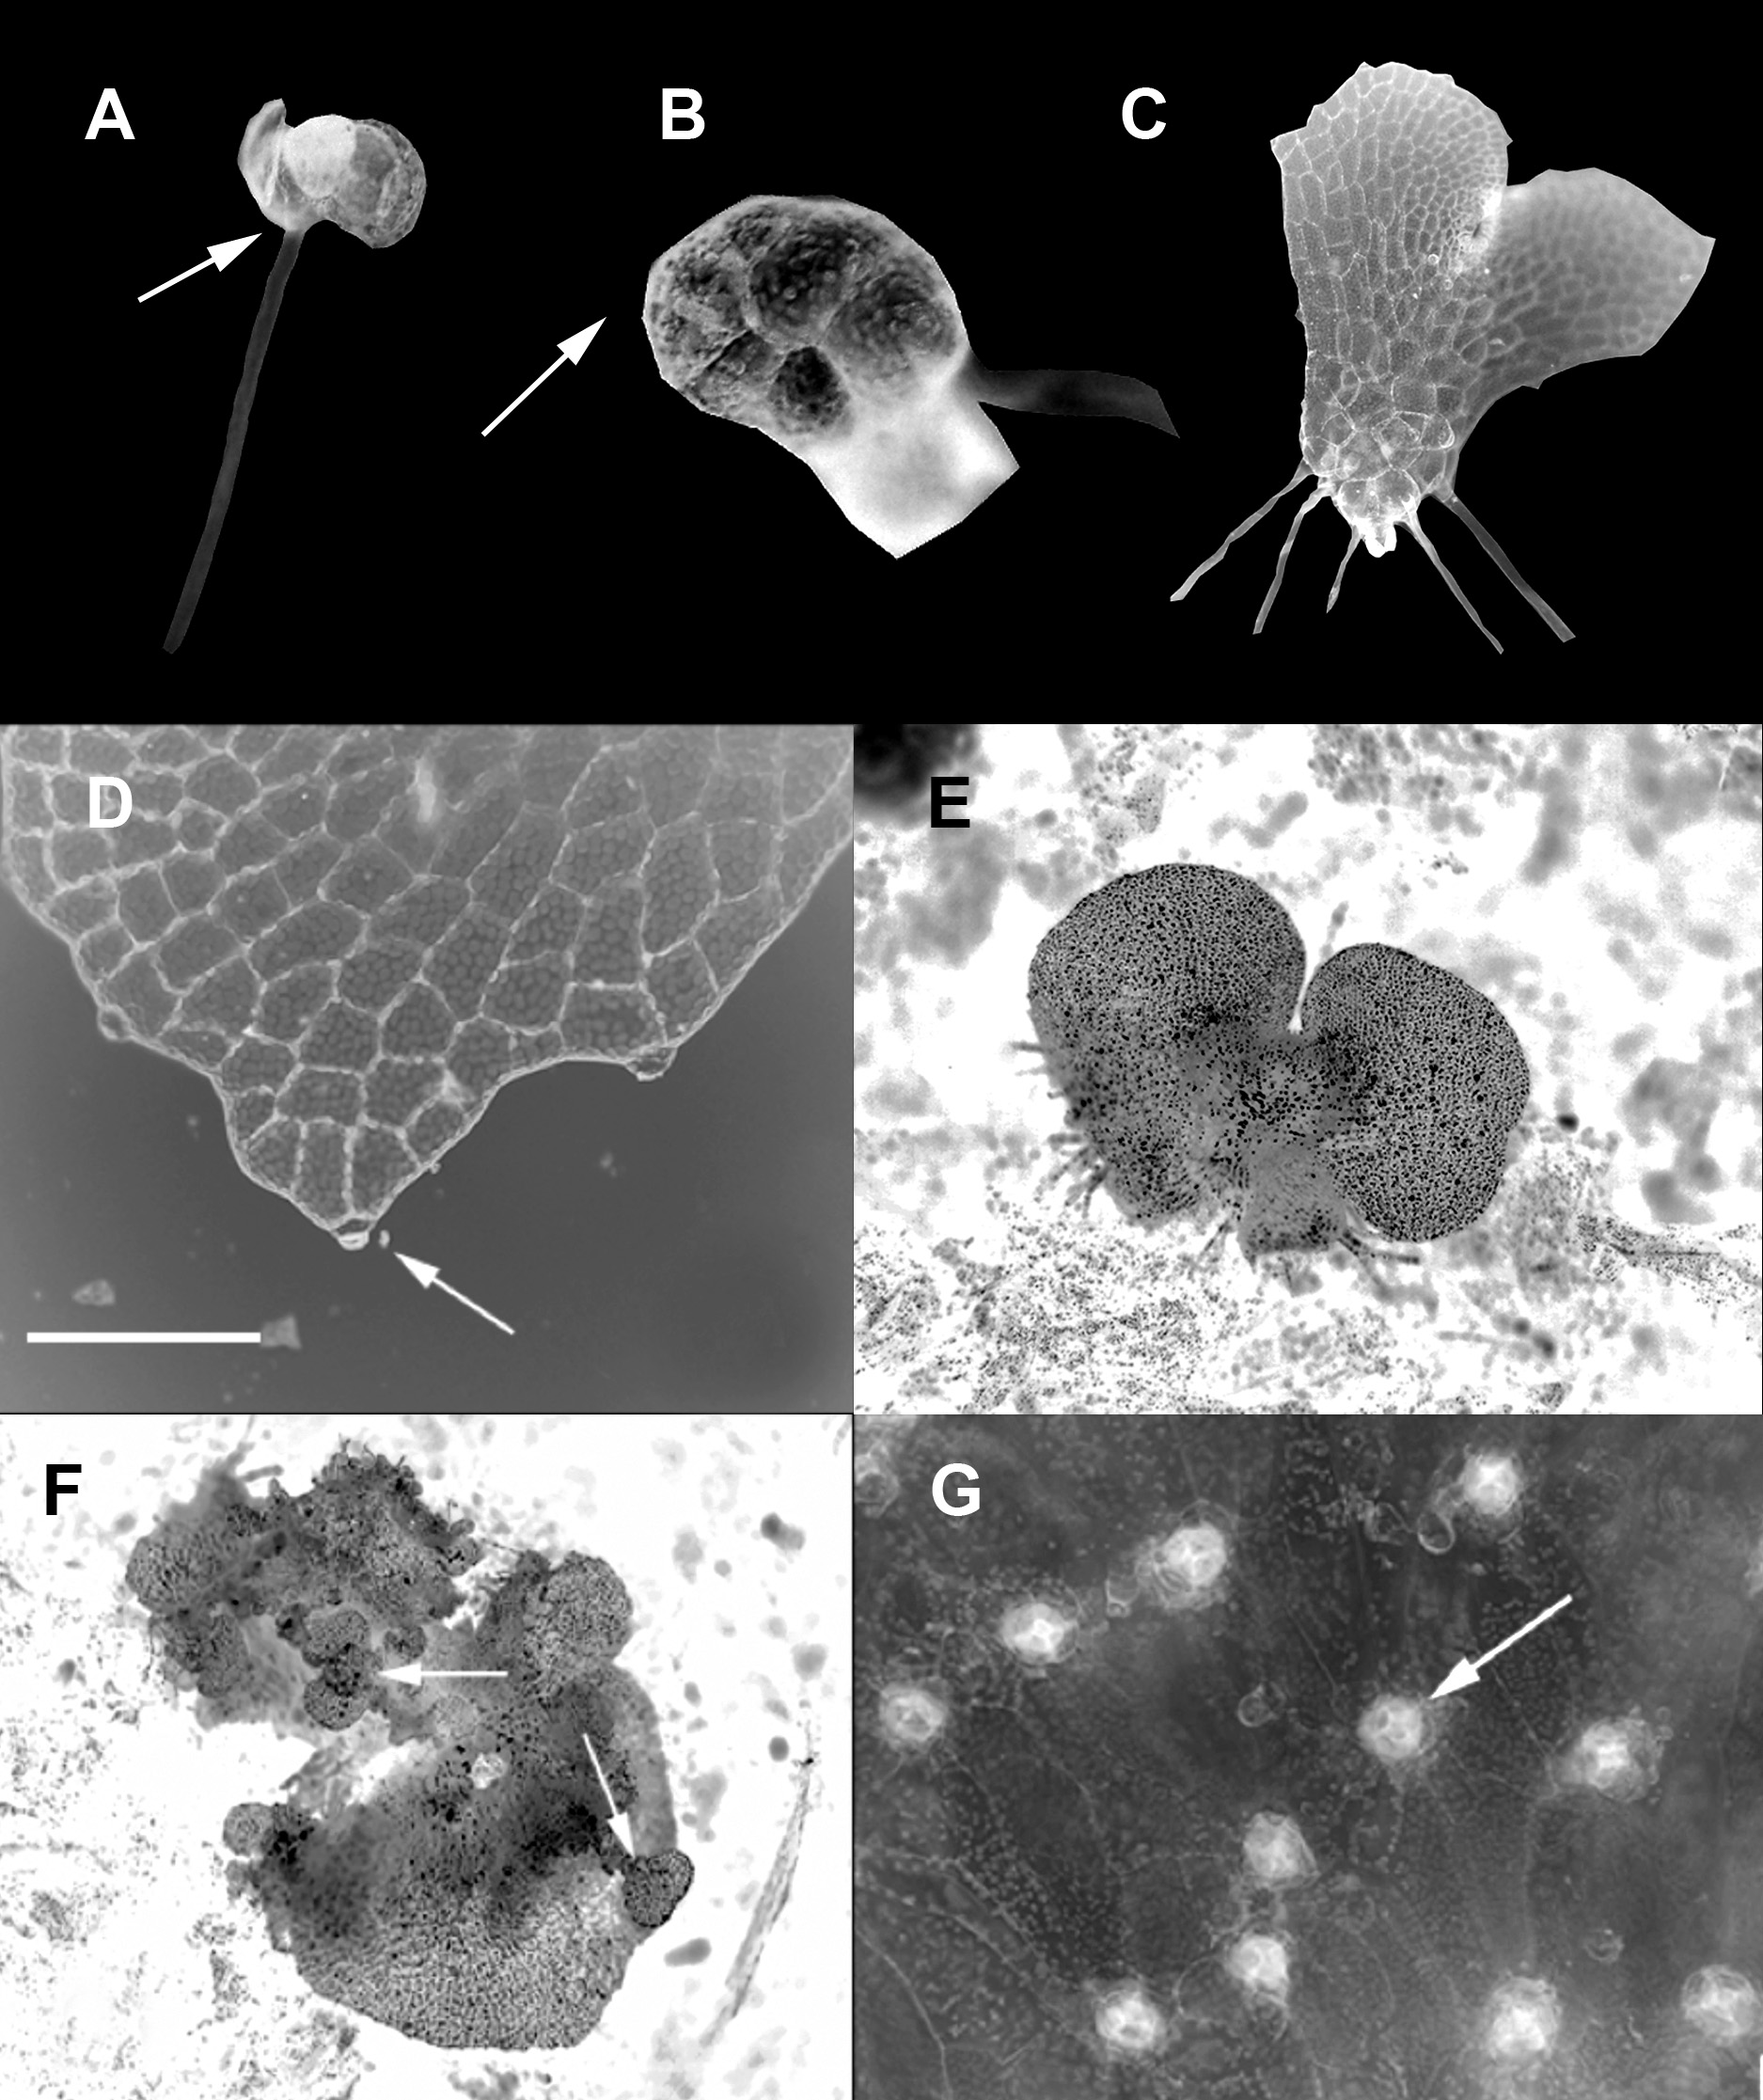 Gayana Bot. 73(2), 2016 FIGURA 2. Patrón de desarrollo morfológico y caracteres principales de los gametófitos de Blechnum arcuatum.